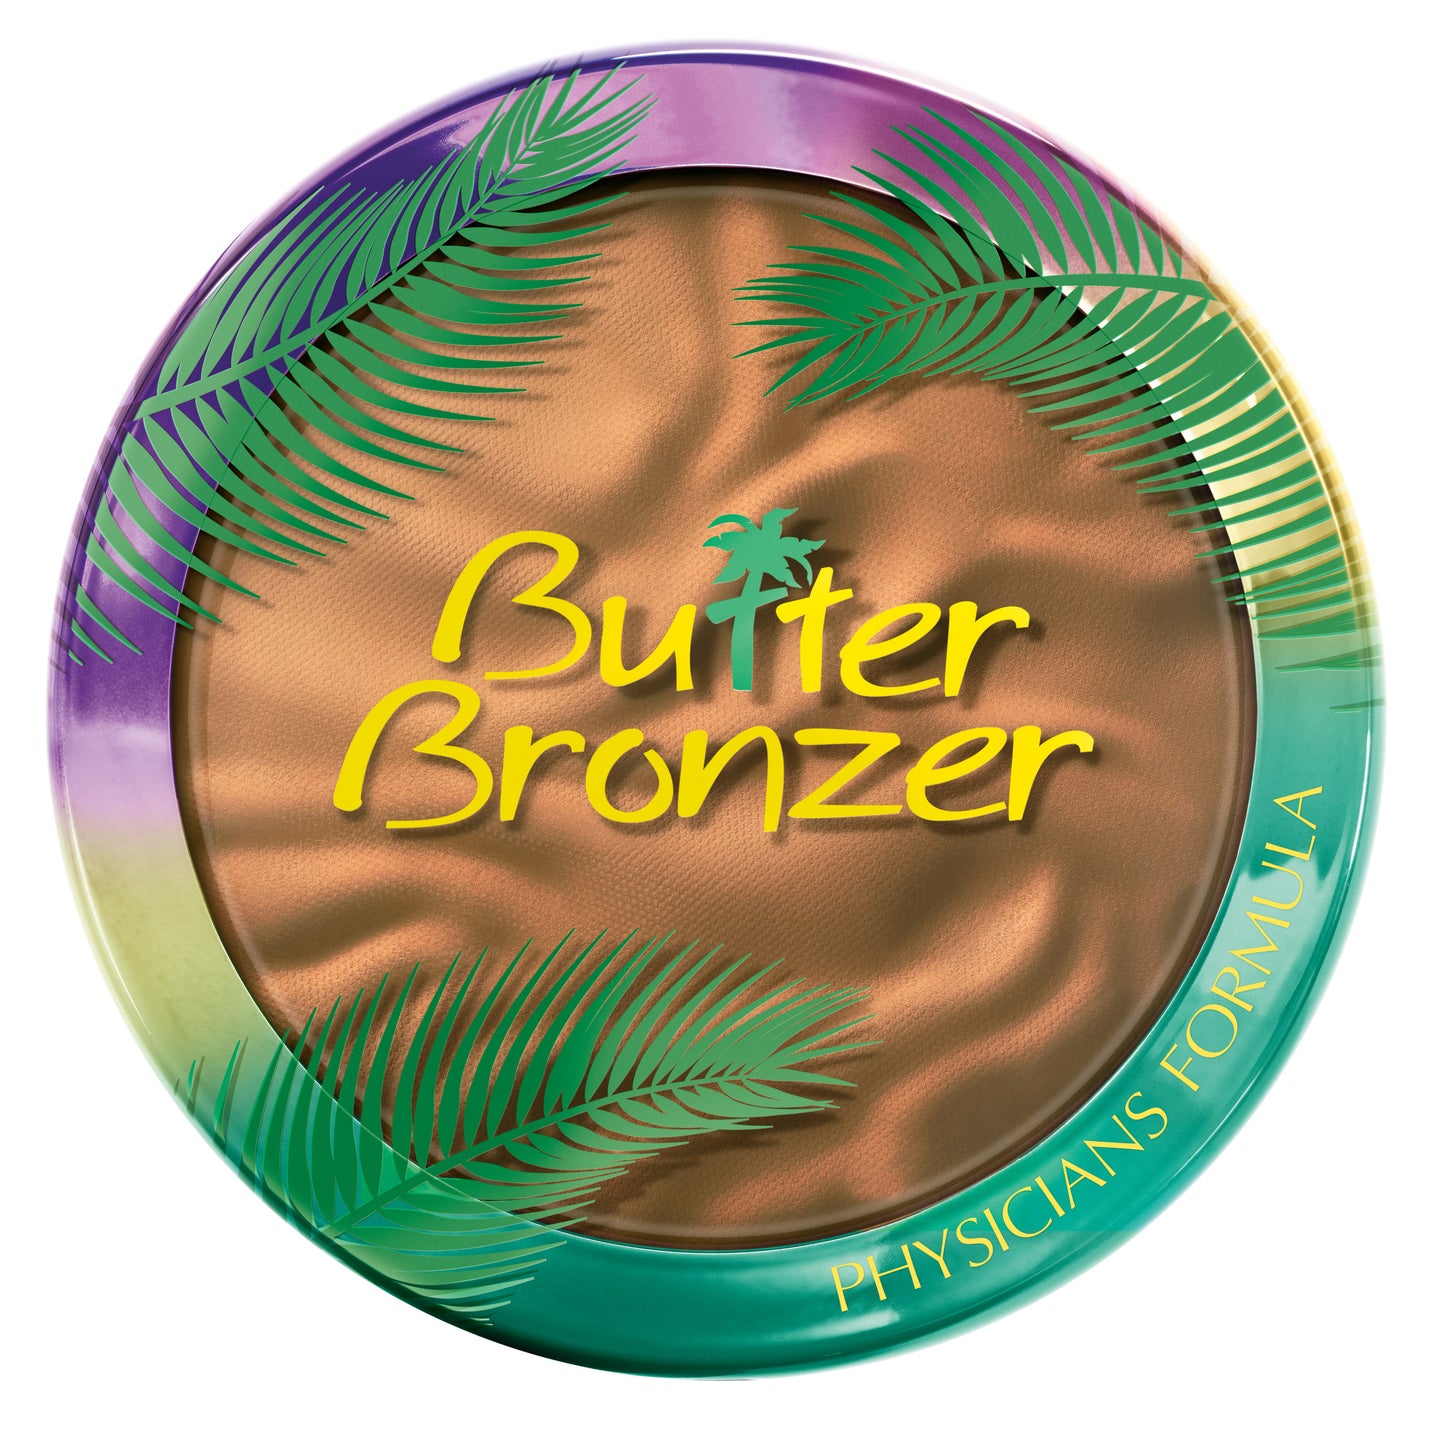 Butter Bronzer - Physicians Formula